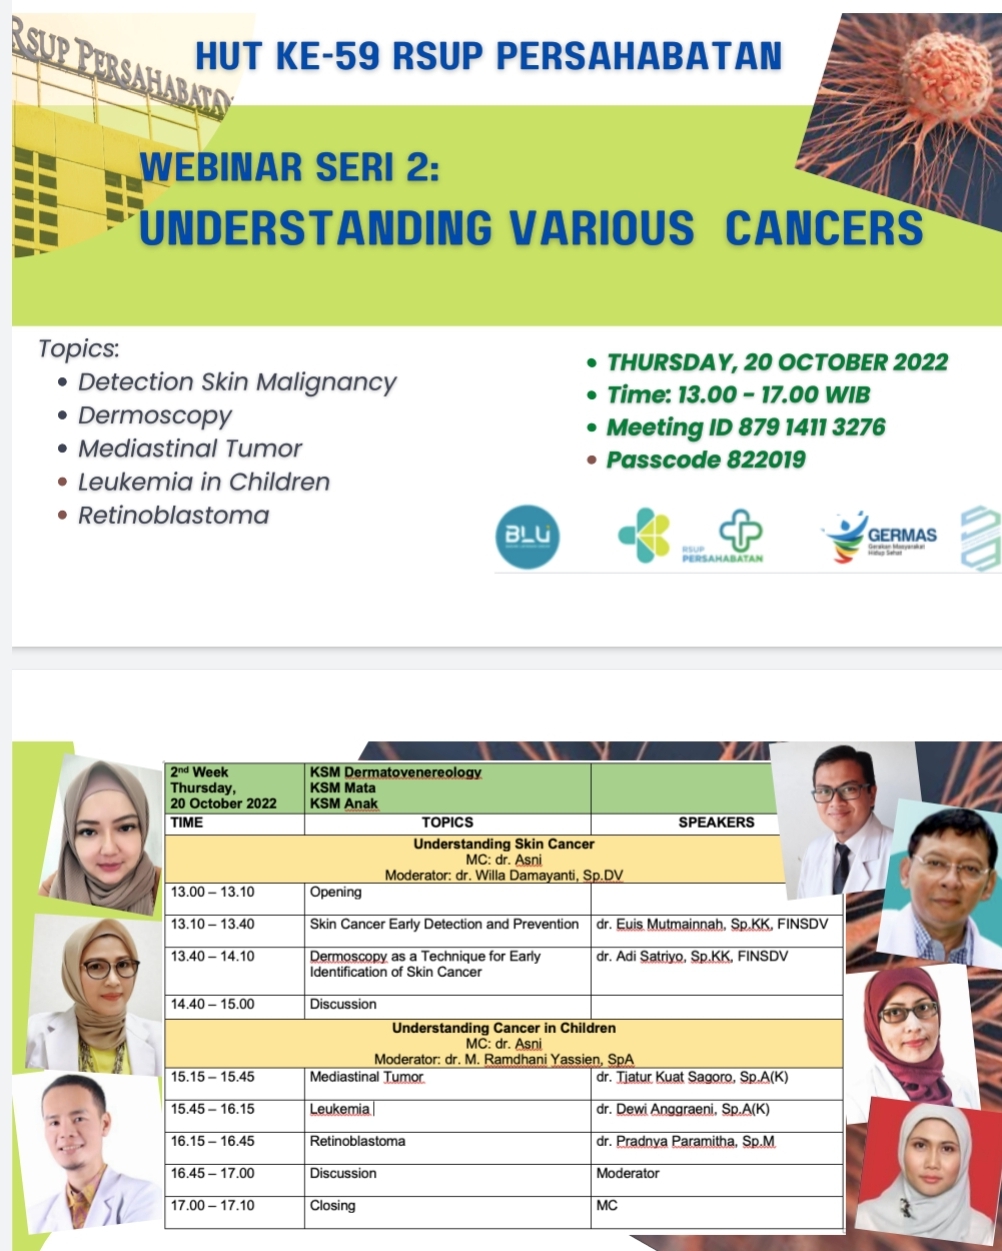 Webinar Seri 2: Understanding Various Cancers, 20 Oktober 2022